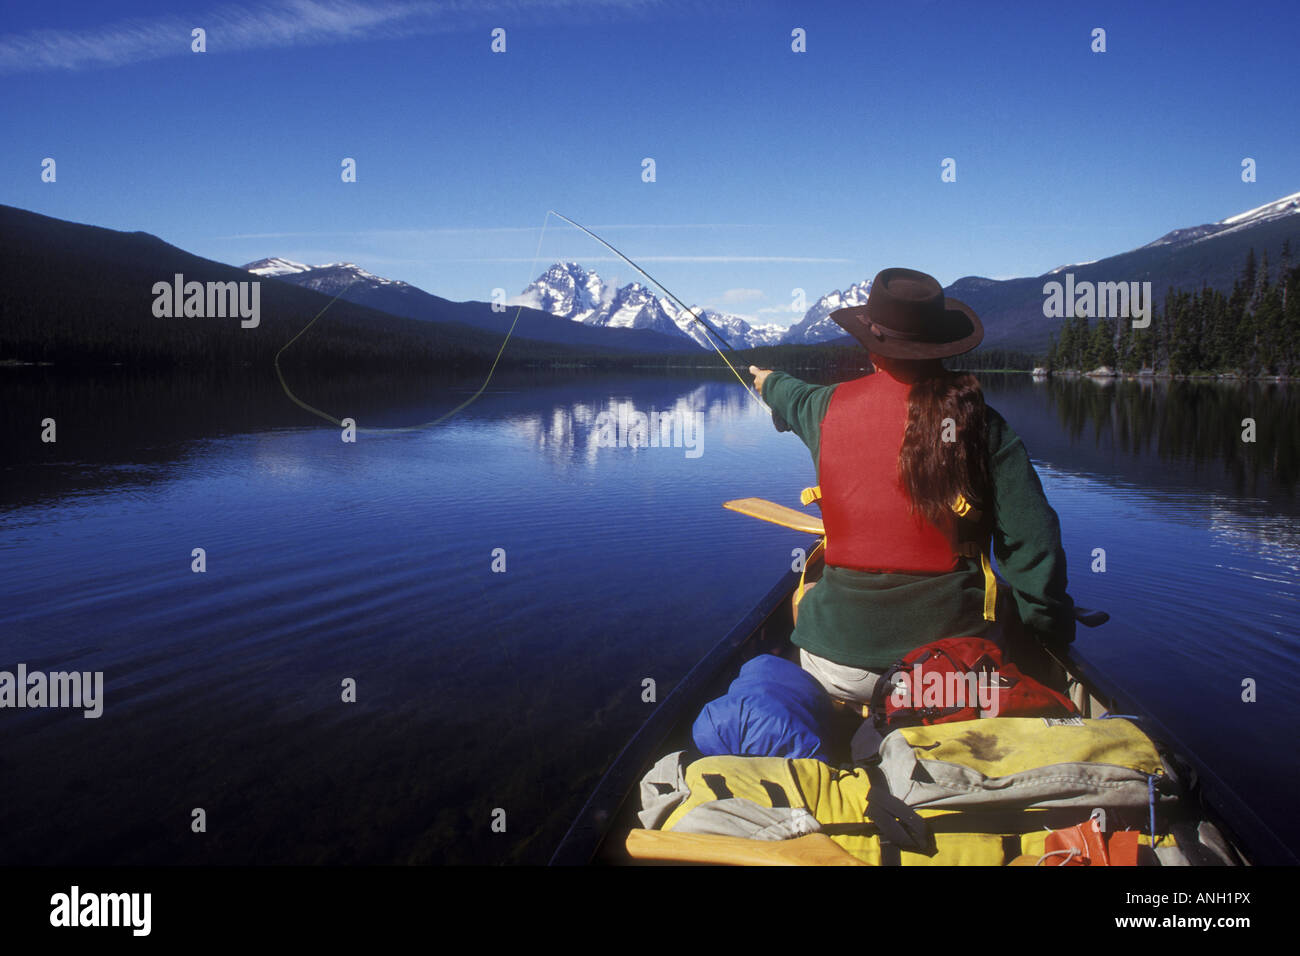 À partir de la pêche canoë sur Turner, lacs, parc Tweedsmuir Chilcotin, en Colombie-Britannique, Canada. Banque D'Images